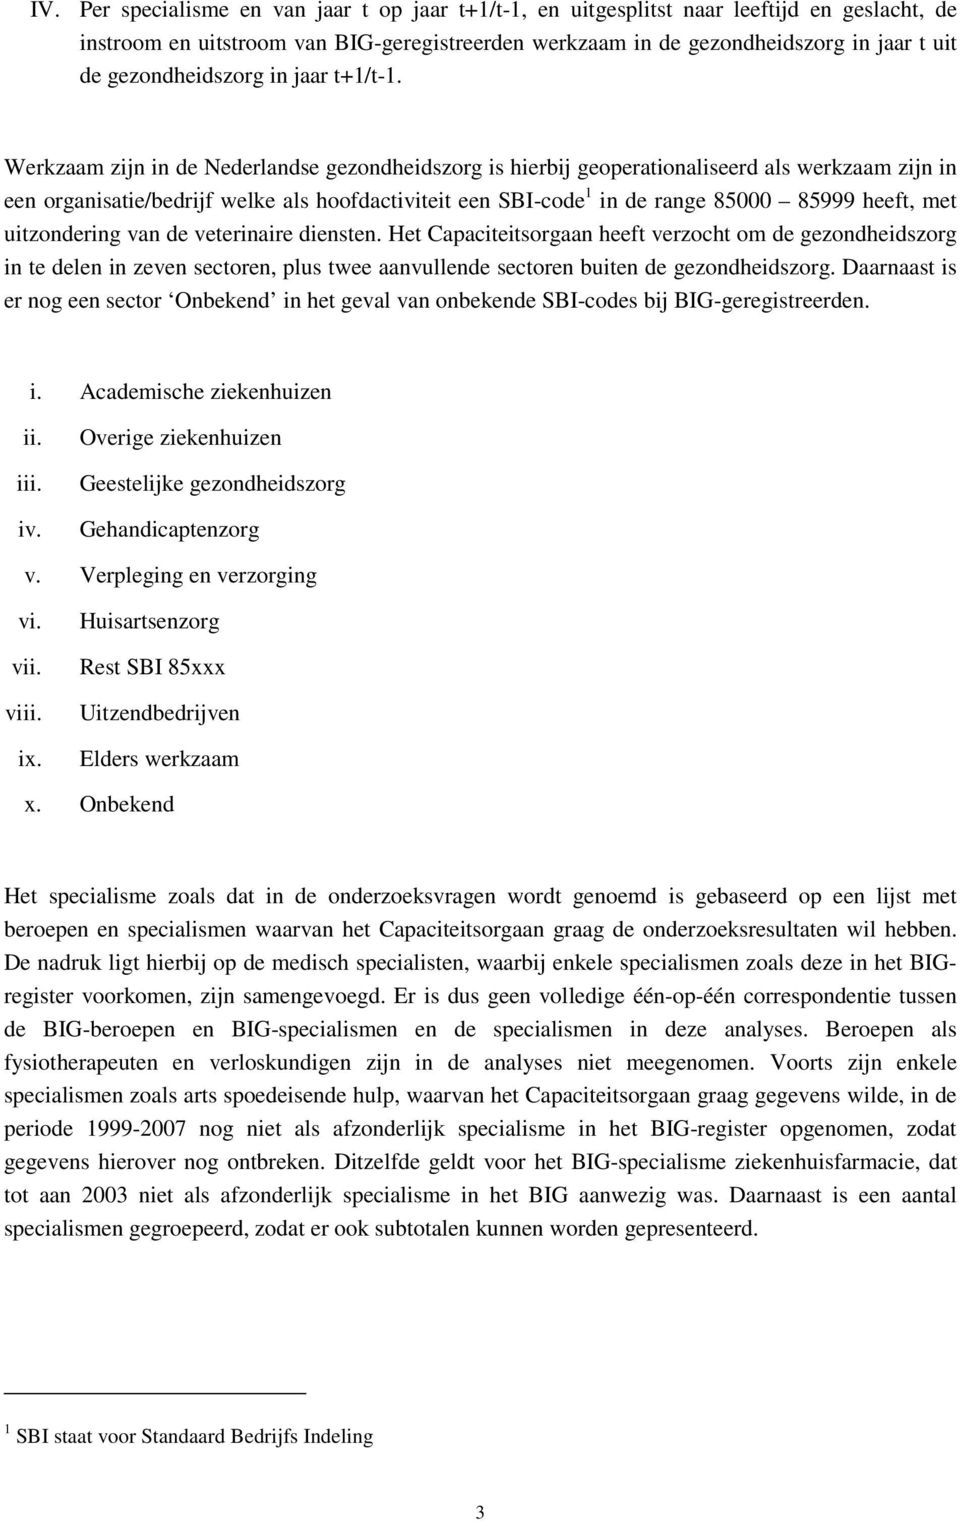 Werkzaam zijn in de Nederlandse gezondheidszorg is hierbij geoperationaliseerd als werkzaam zijn in een organisatie/bedrijf welke als hoofdactiviteit een SBI-code 1 in de range 85000 85999 heeft, met